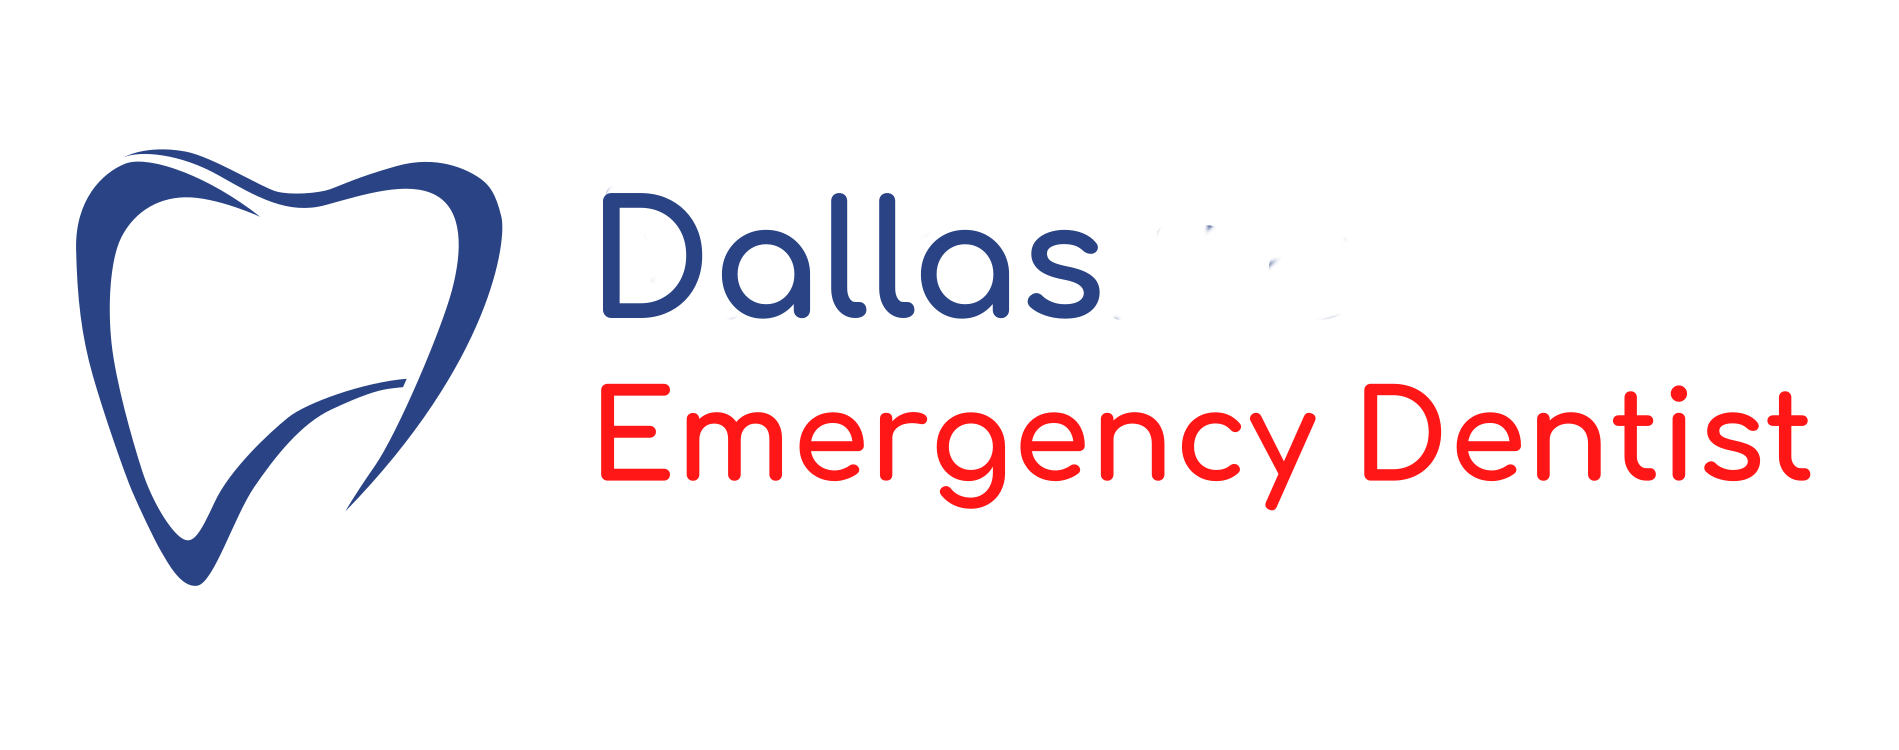 Emergency Dentist in Dallas